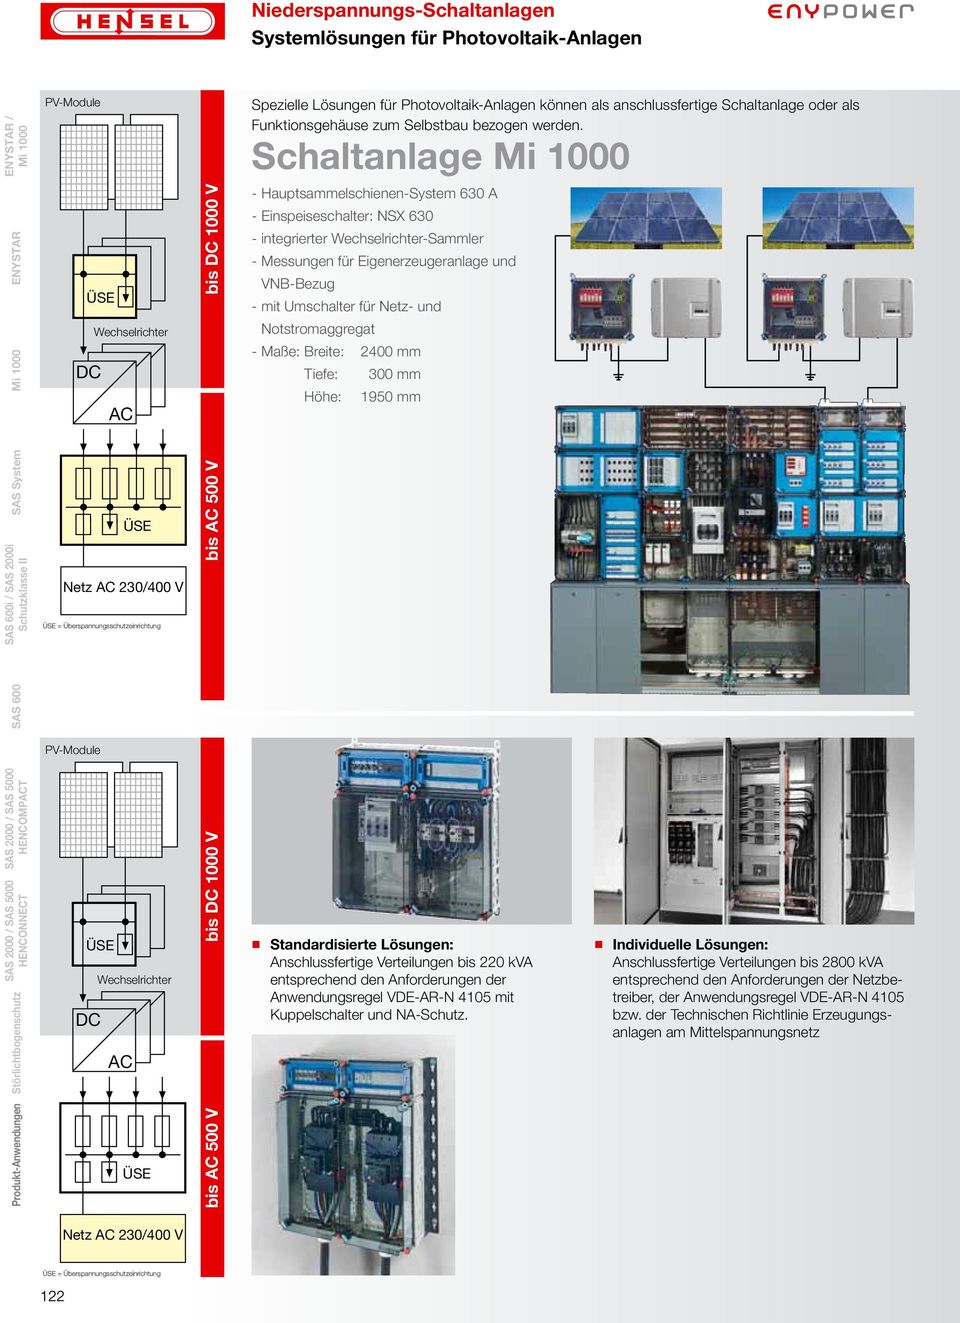 Hauptsammelschienen-System 630 A - Einspeiseschalter: NSX 630 - integrierter Wechselrichter-Sammler - Messungen für Eigenerzeugeranlage und VNB-Bezug - mit Umschalter für Netz- und Notstromaggregat -